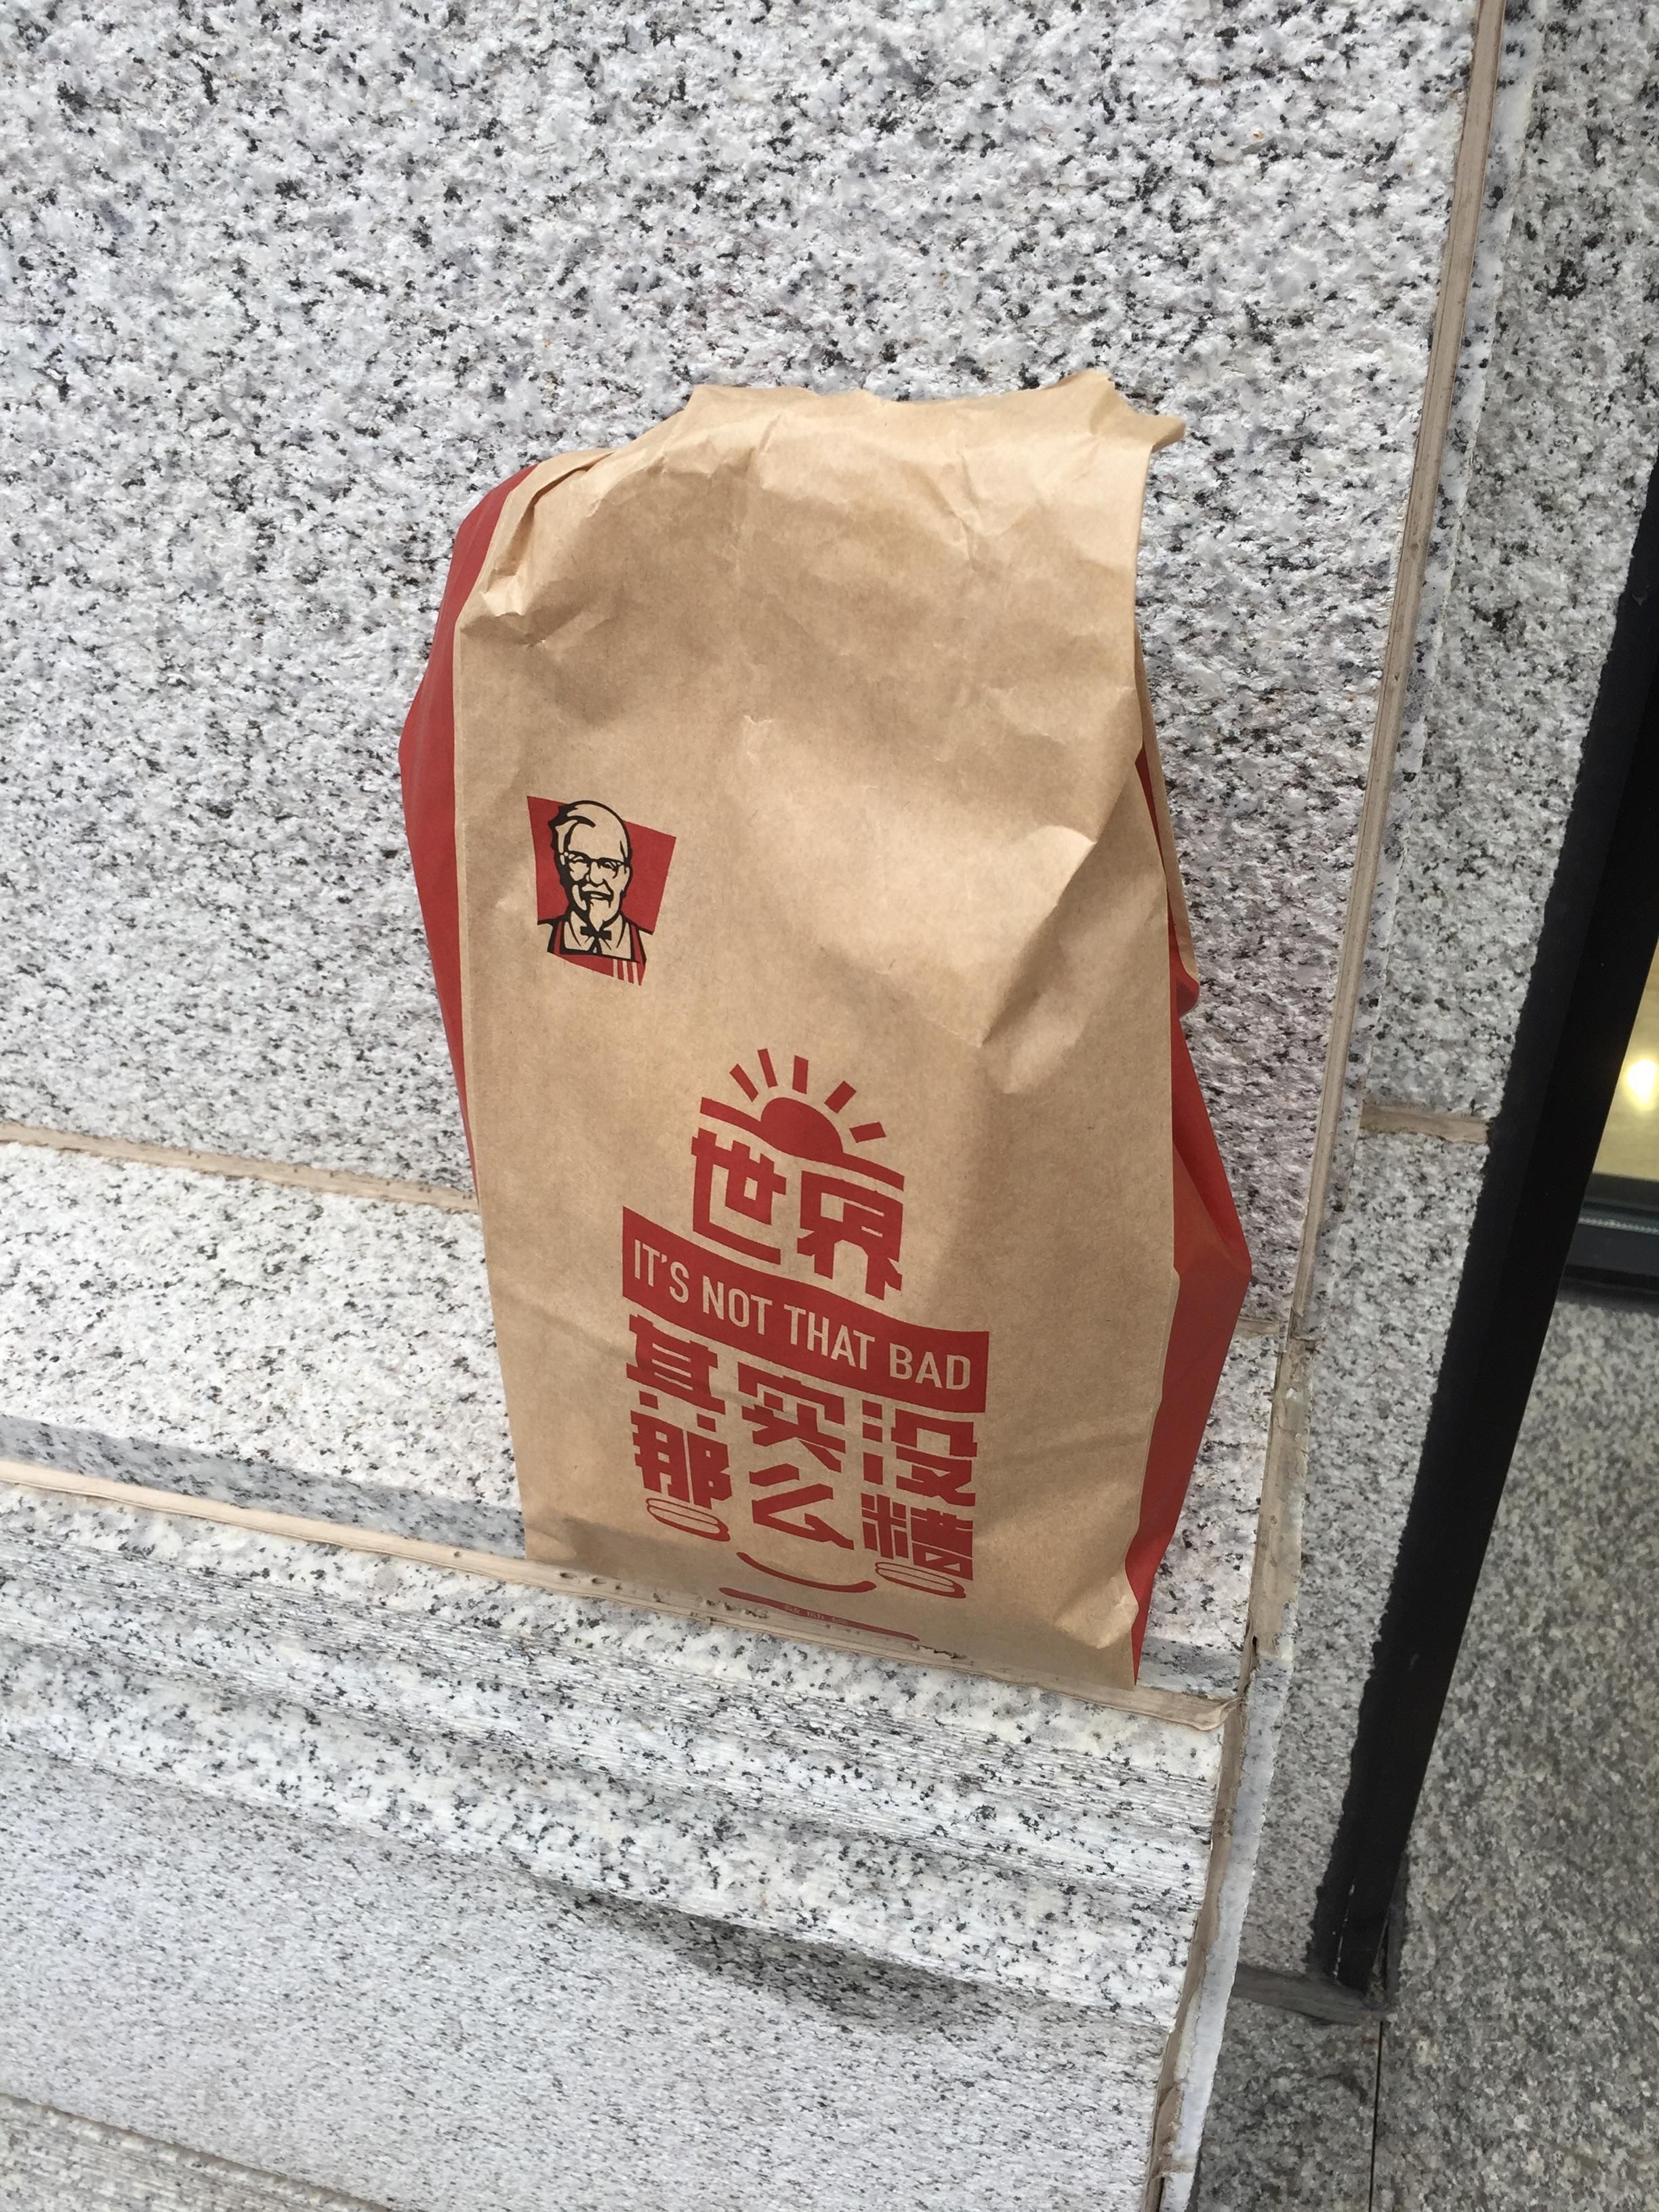 Went to KFC in China...